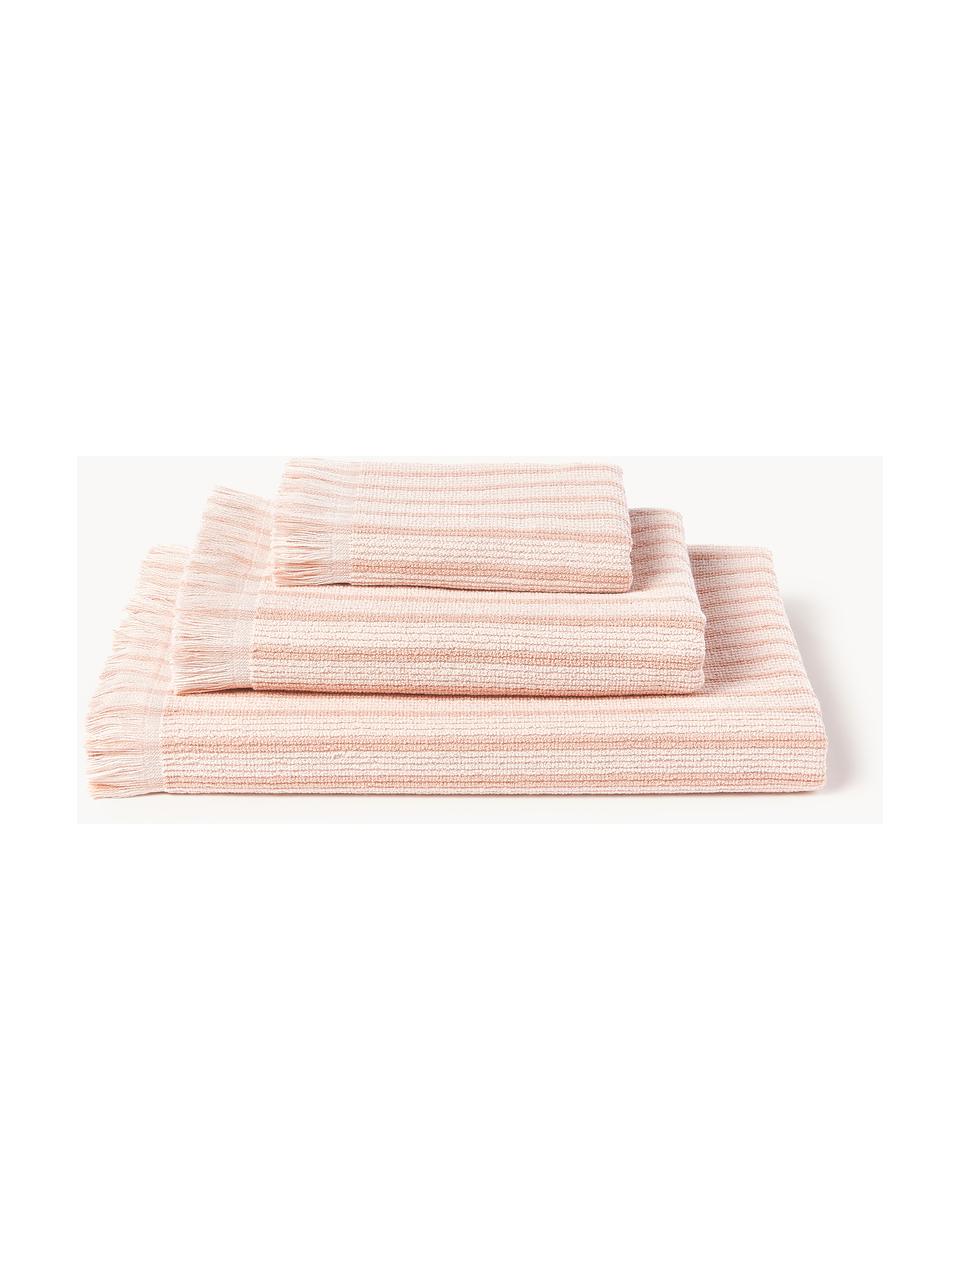 Sada ručníků Irma, různé velikosti, Světle růžová, 4dílná sada (ručník a osuška)